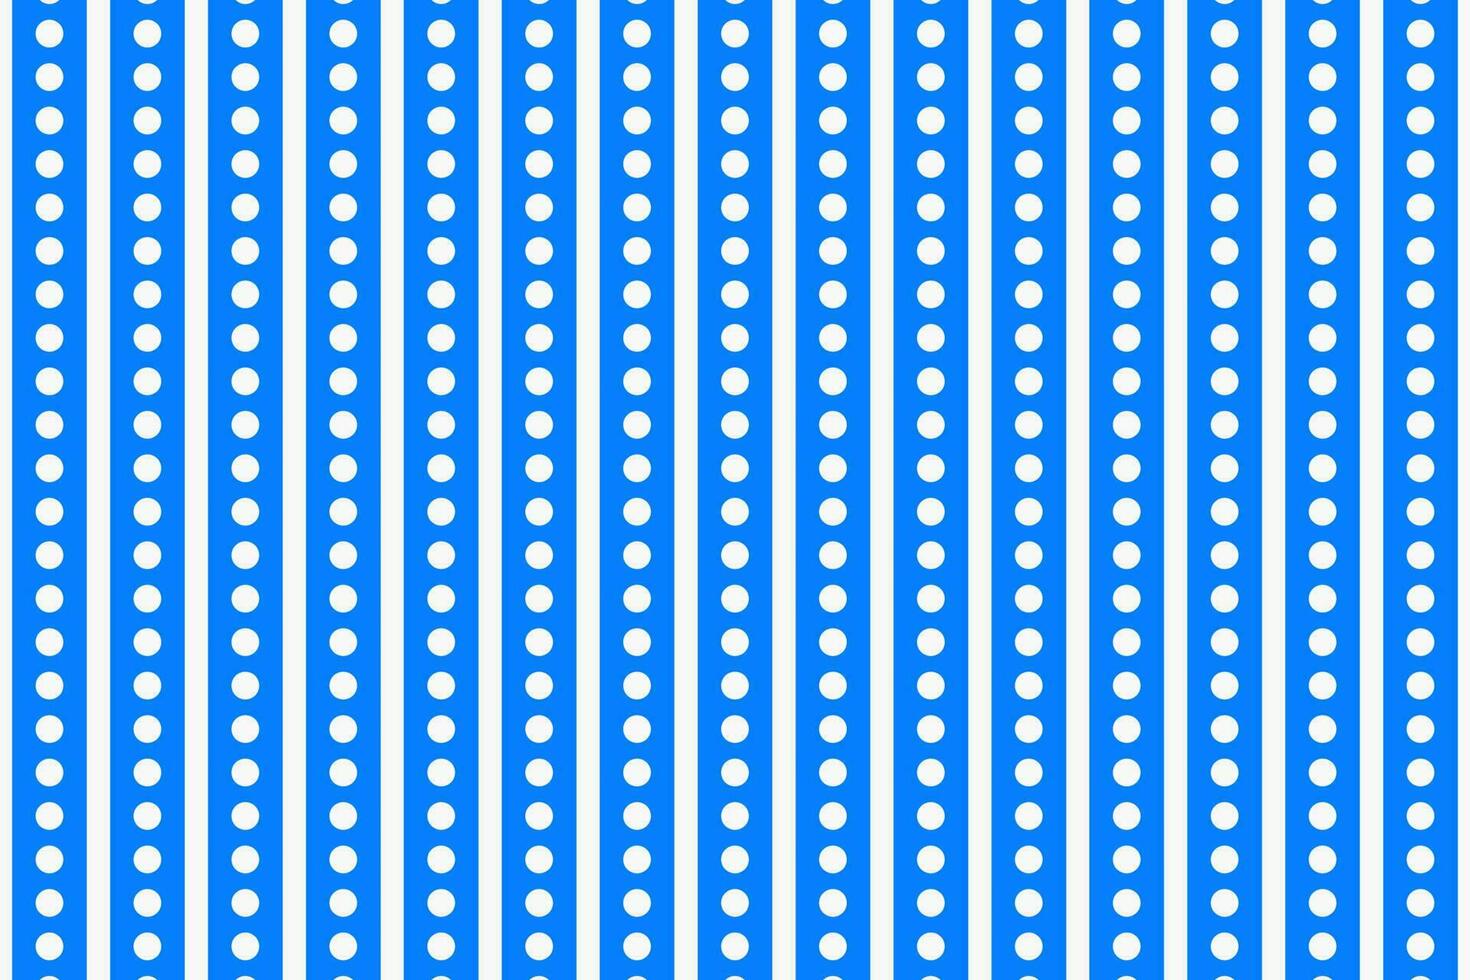 blu e bianca verticale banda punto cerchio griglia. senza soluzione di continuità modello vettore sfondo.